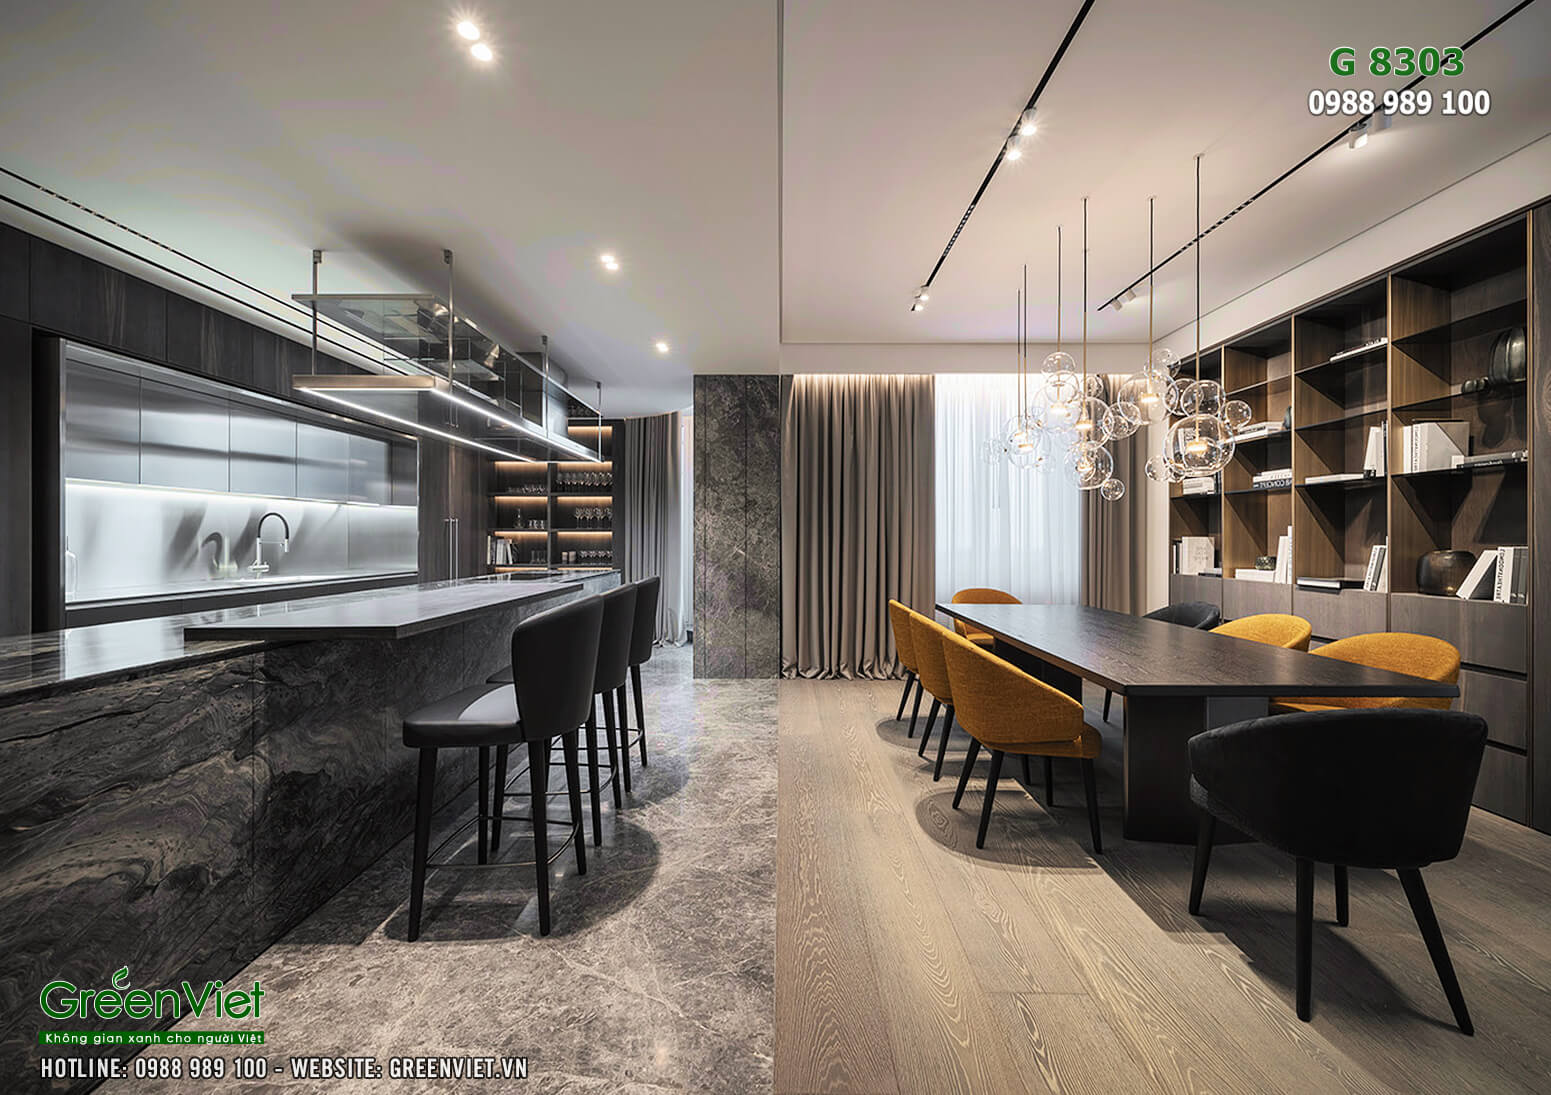 Hình ảnh: Không gian phòng bếp - Thiết kế nội thất biệt thự cao cấp